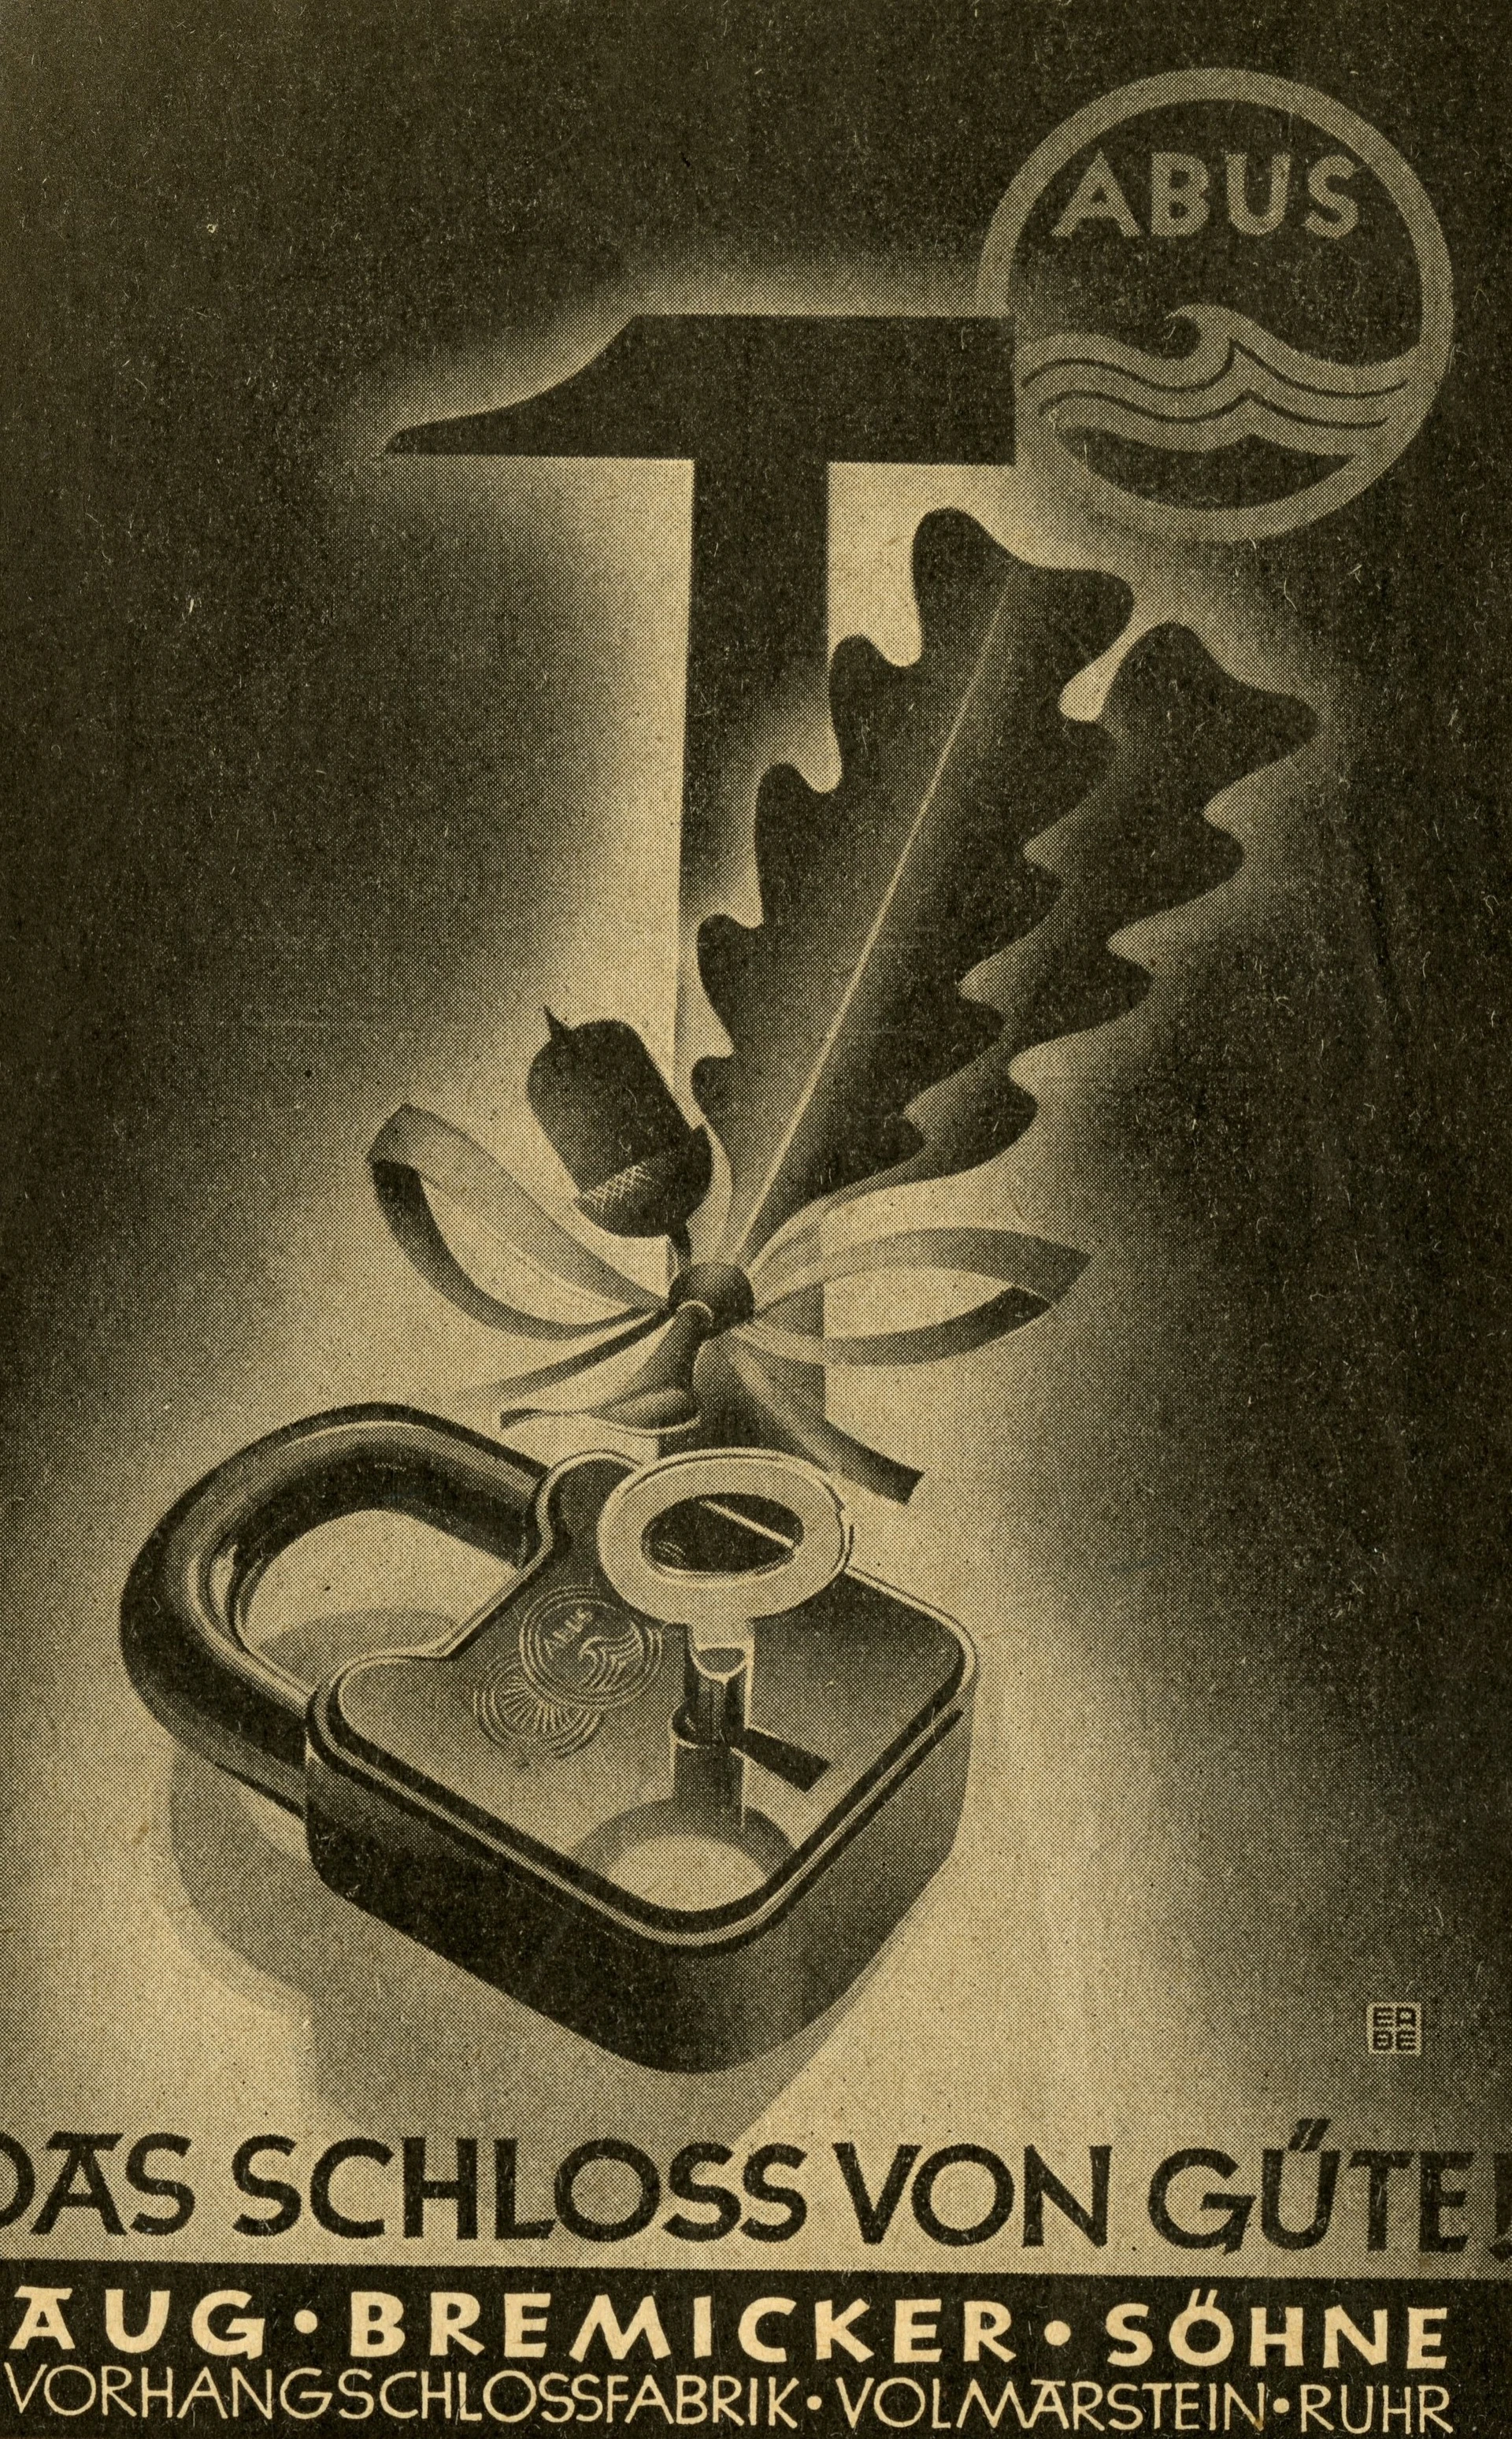 En mørk plakat, der forestiller en hængelås sammen med en gren med agern og en hammer, med teksten "Kvalitetslåsen!" © ABUS